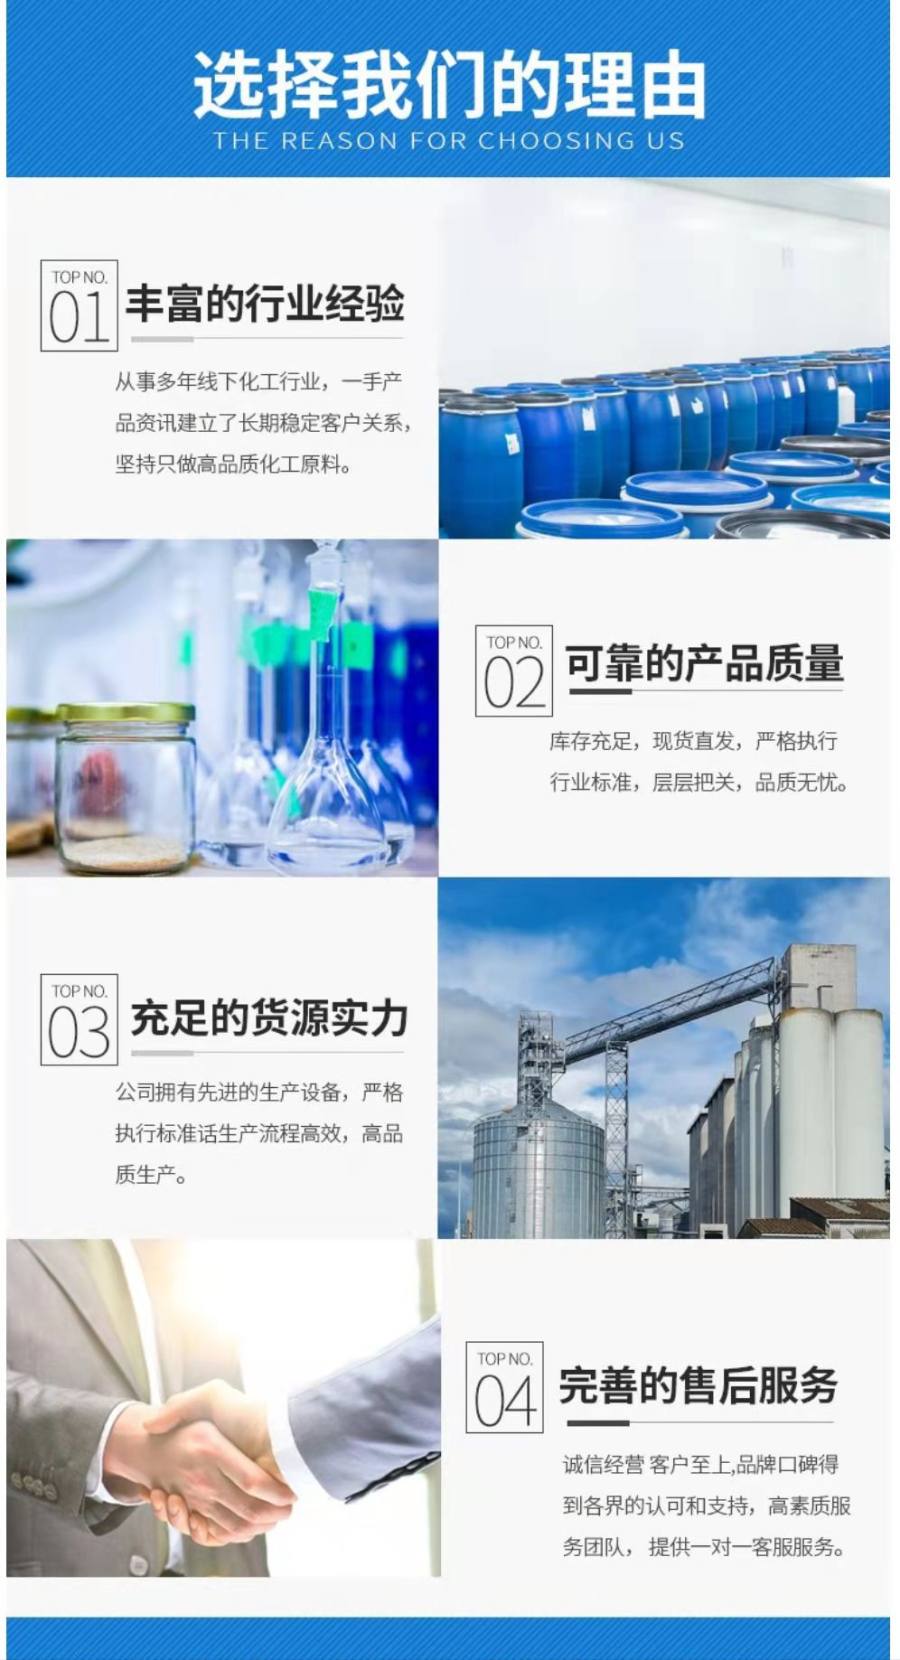 牙刷丝硅油加水比例高厂家直销武汉汉南